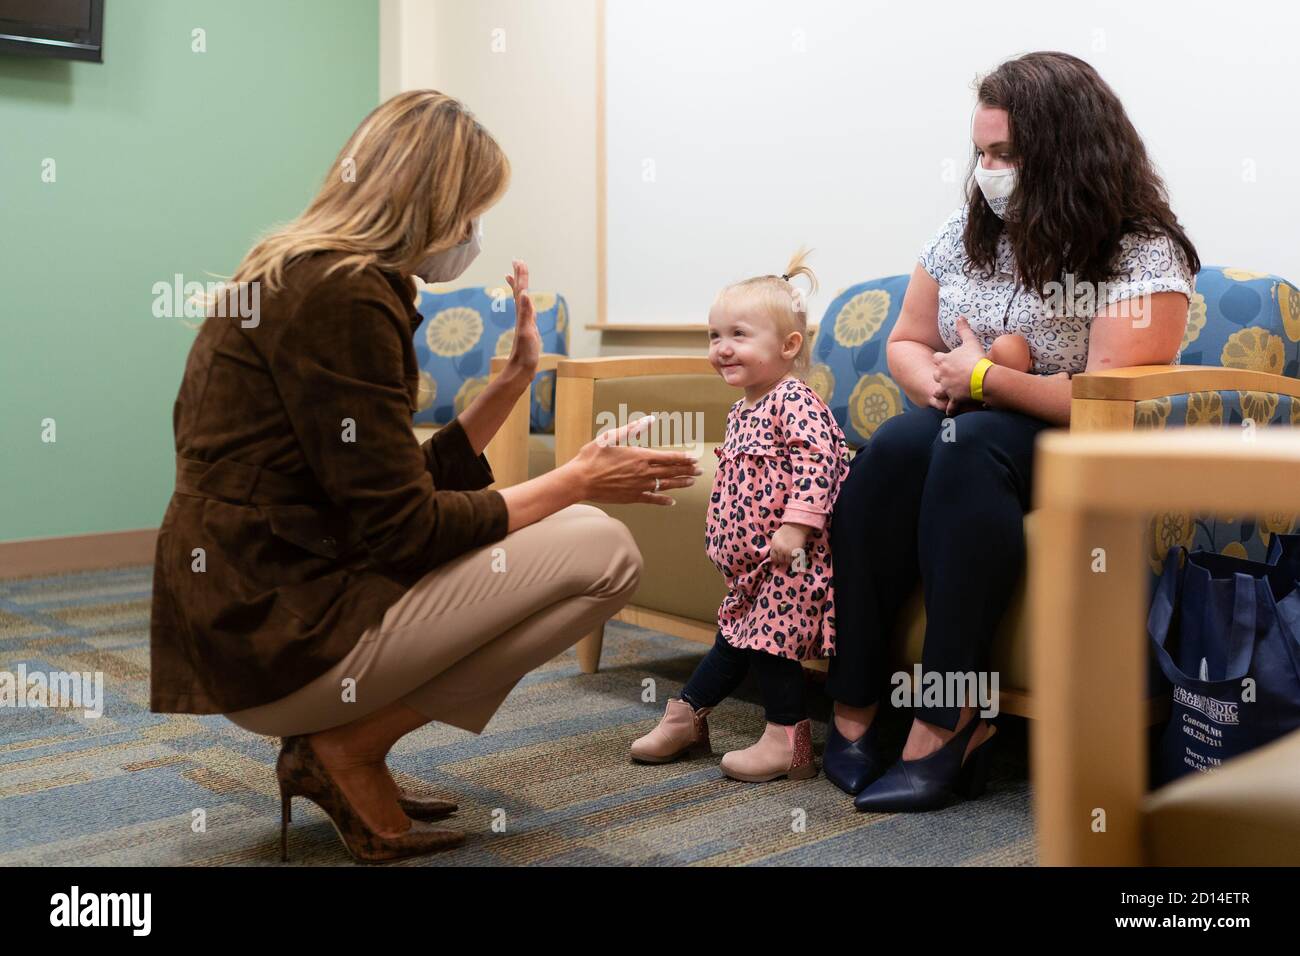 Primera Dama Melania Trump en New Hampshire. Primera Dama Melania Trump se reúne con la madre graduada del síndrome de abstinencia neonatal Ruth Warren y su hija de 18 meses Oaklynn el jueves, 17 de septiembre de 2020, en el Hospital Concord en Concord, Nueva York Foto de stock